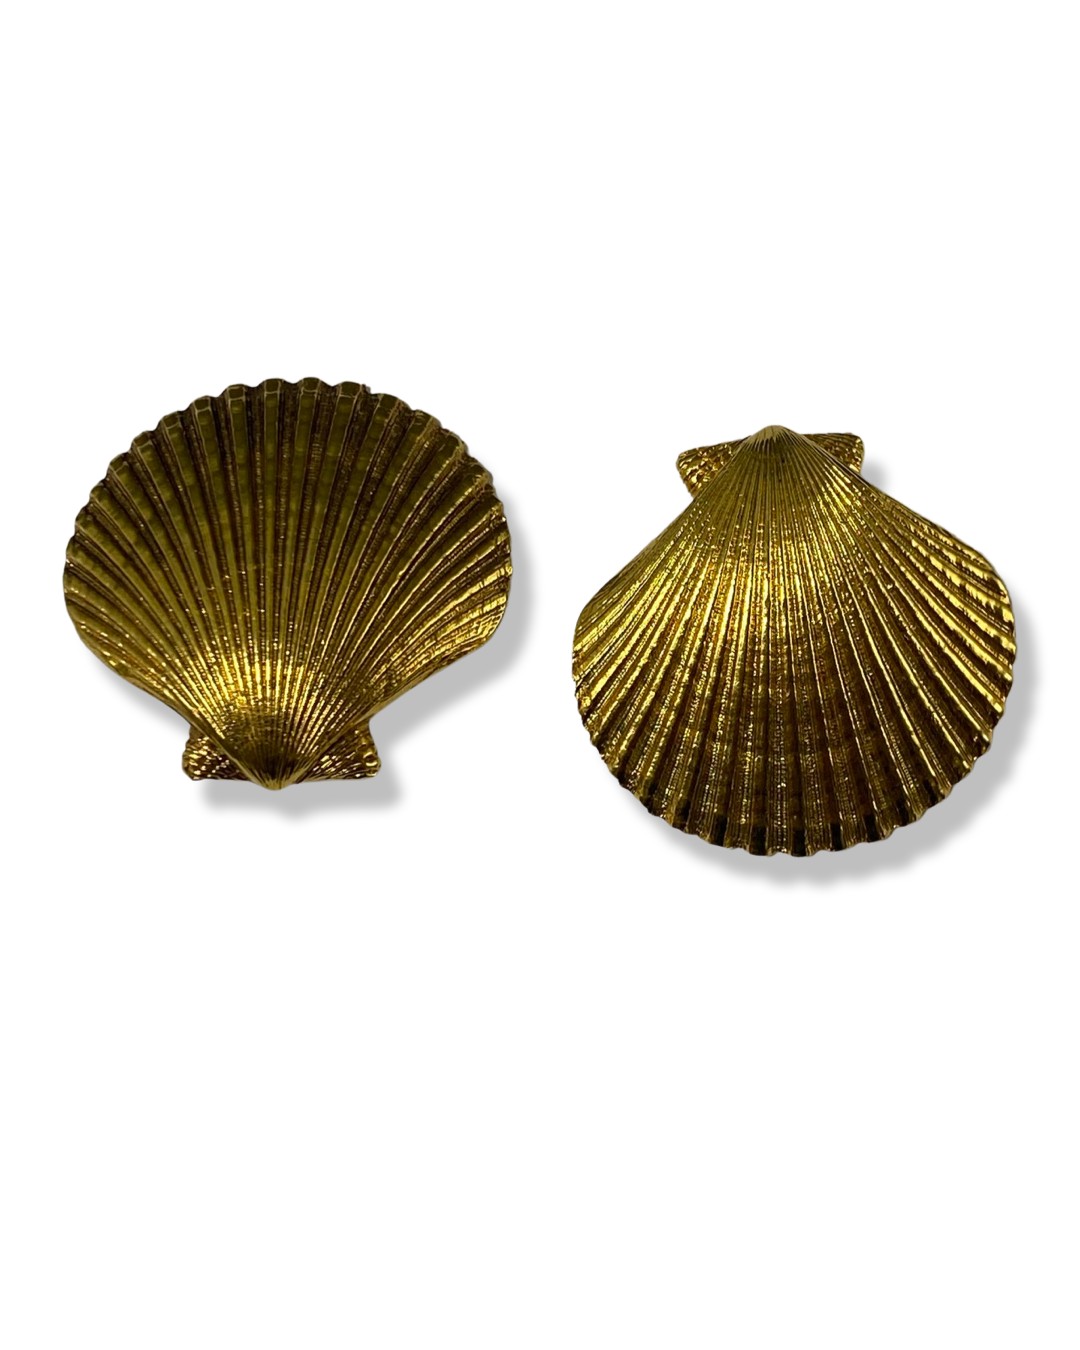 Yves Saint Laurent (YSL) gilt Shell fully marked earrings weighing 30.1 grams